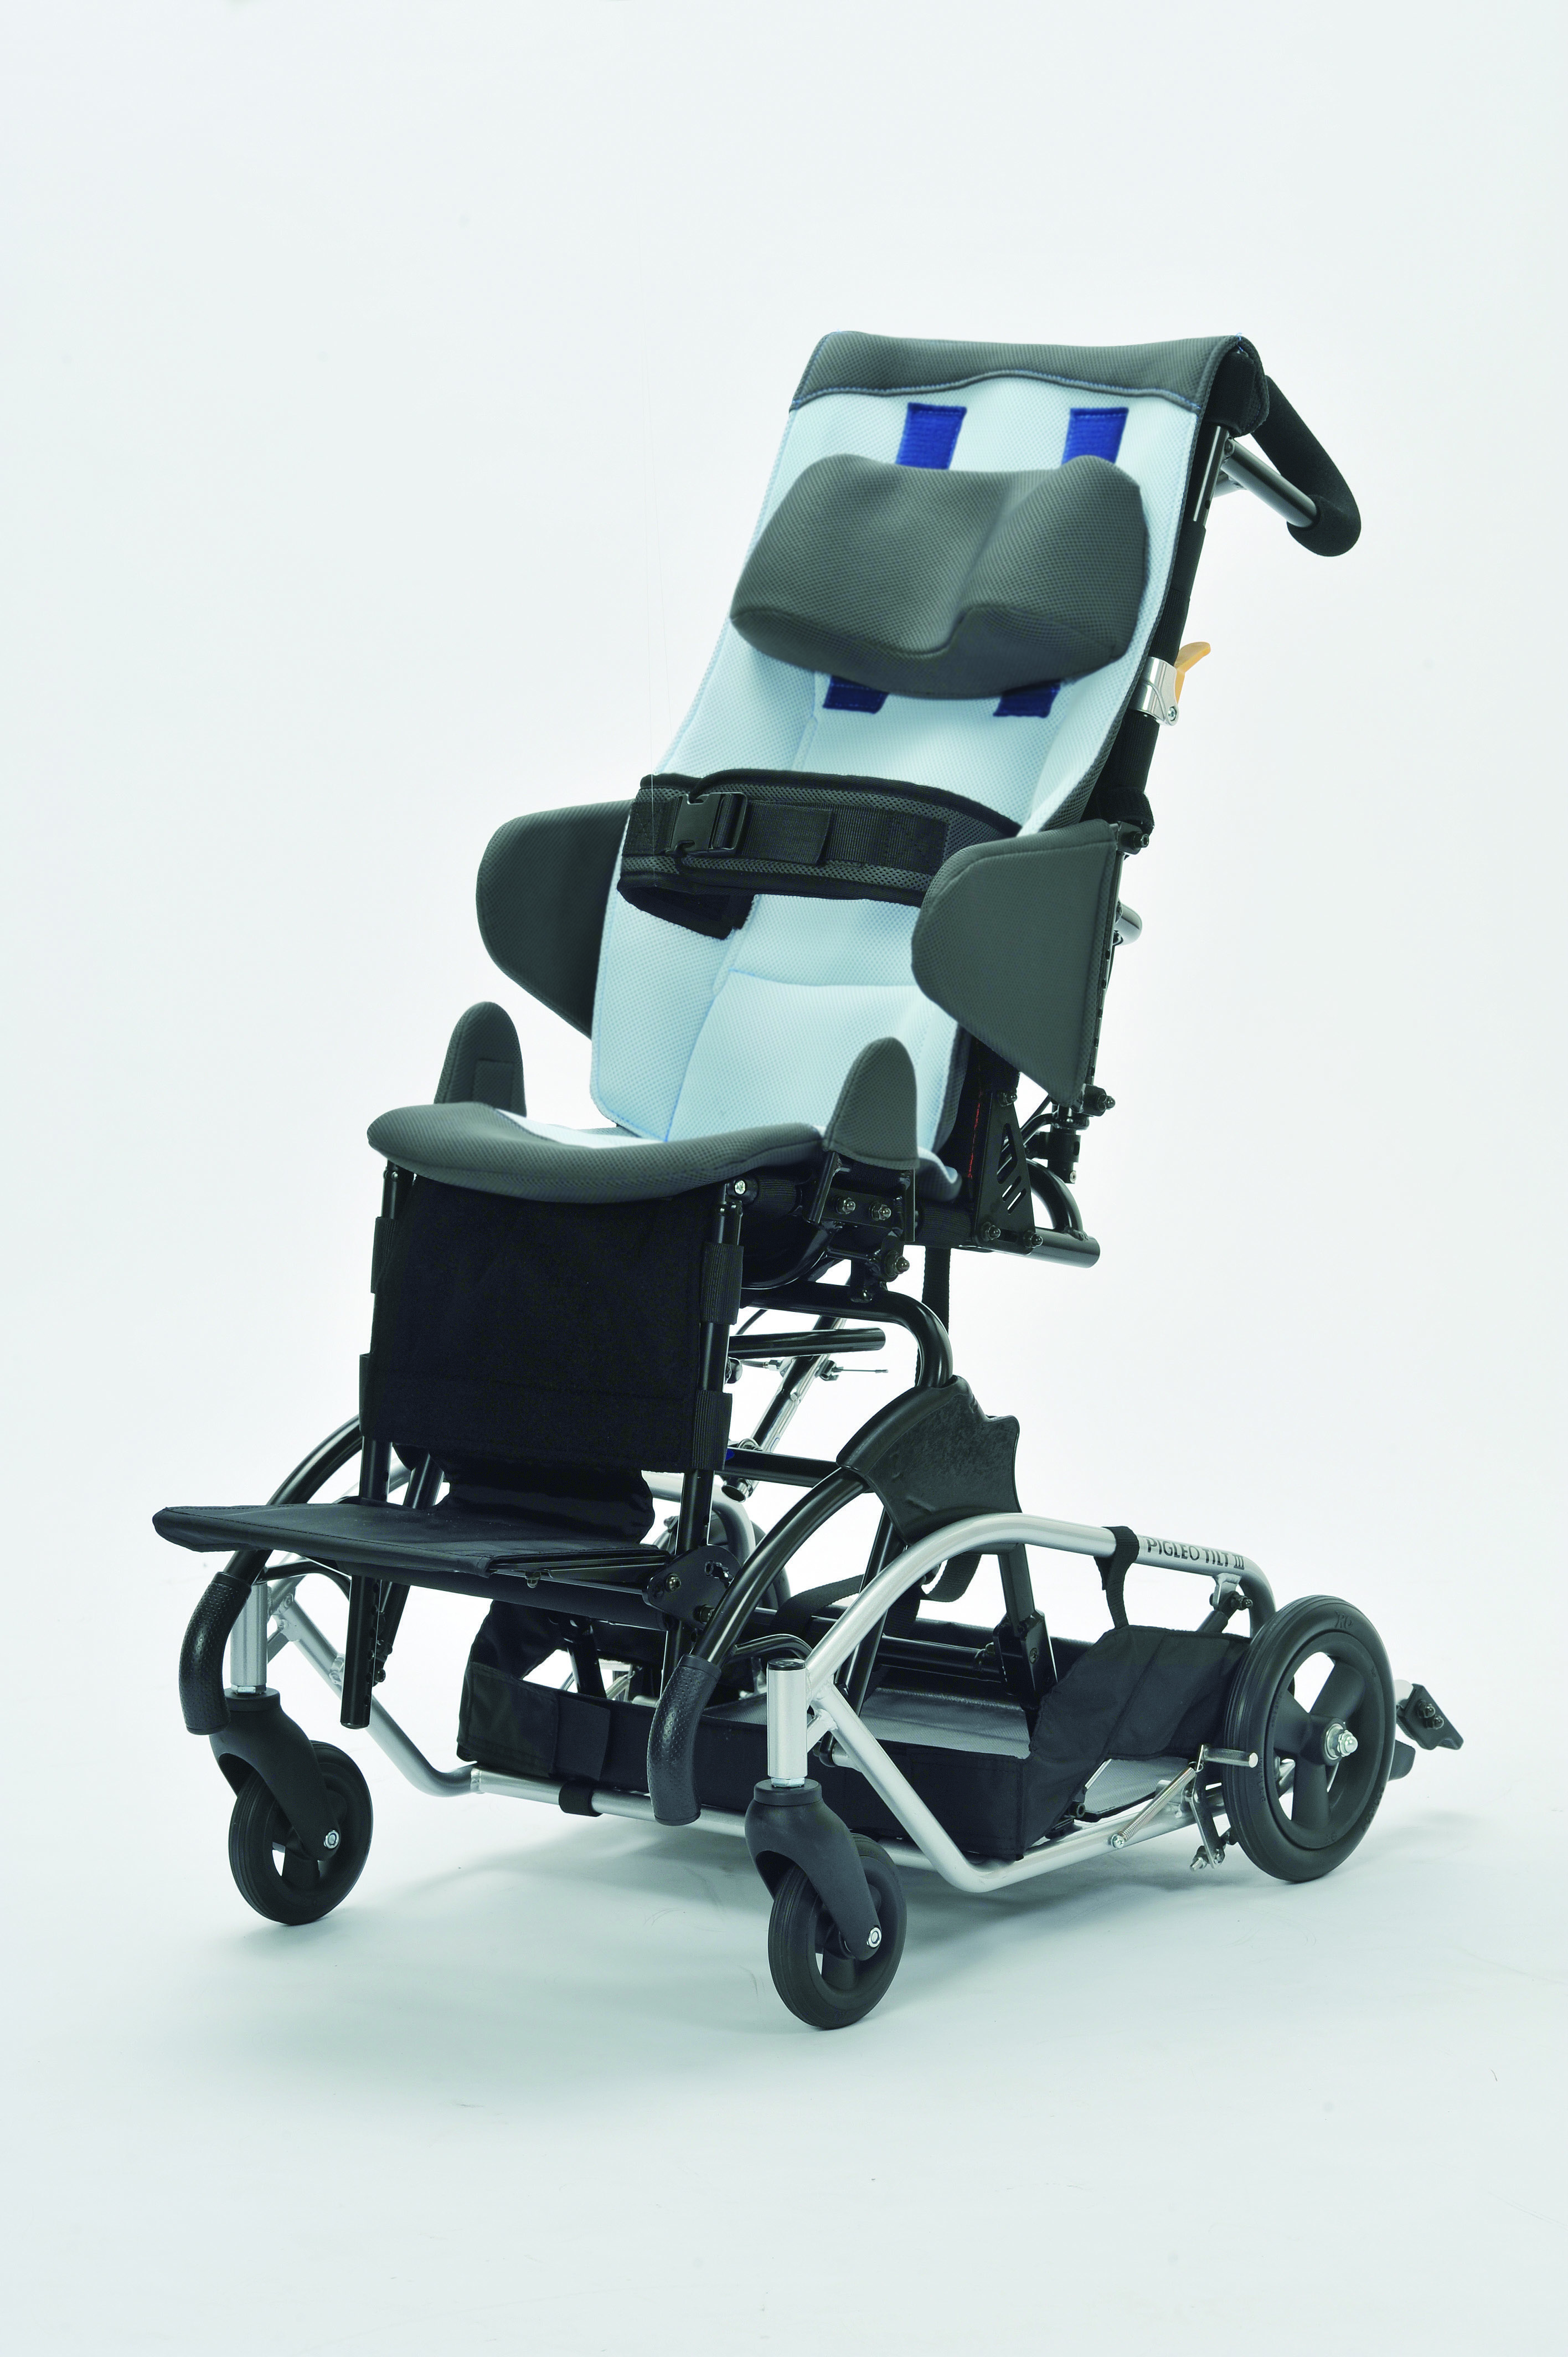 PIGLEO Ⅱ 子供用バギー型車椅子-